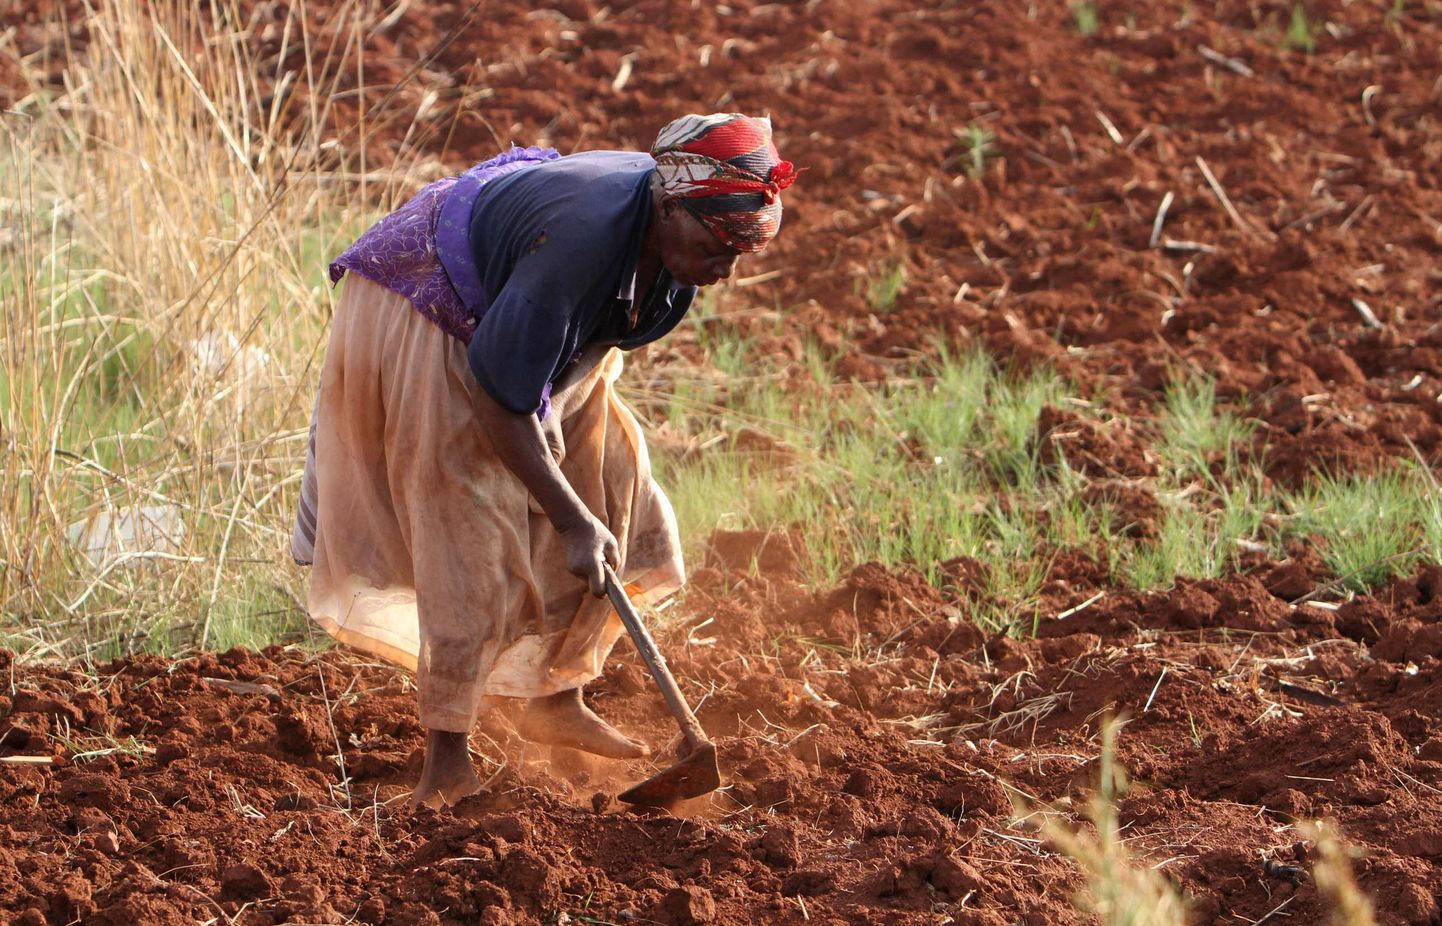 Zimbabwe naine harimas oma põllulappi. Vaeste riikide põlluharimismeetodid ei suuda paraku sageli toota piisavalt toitu.